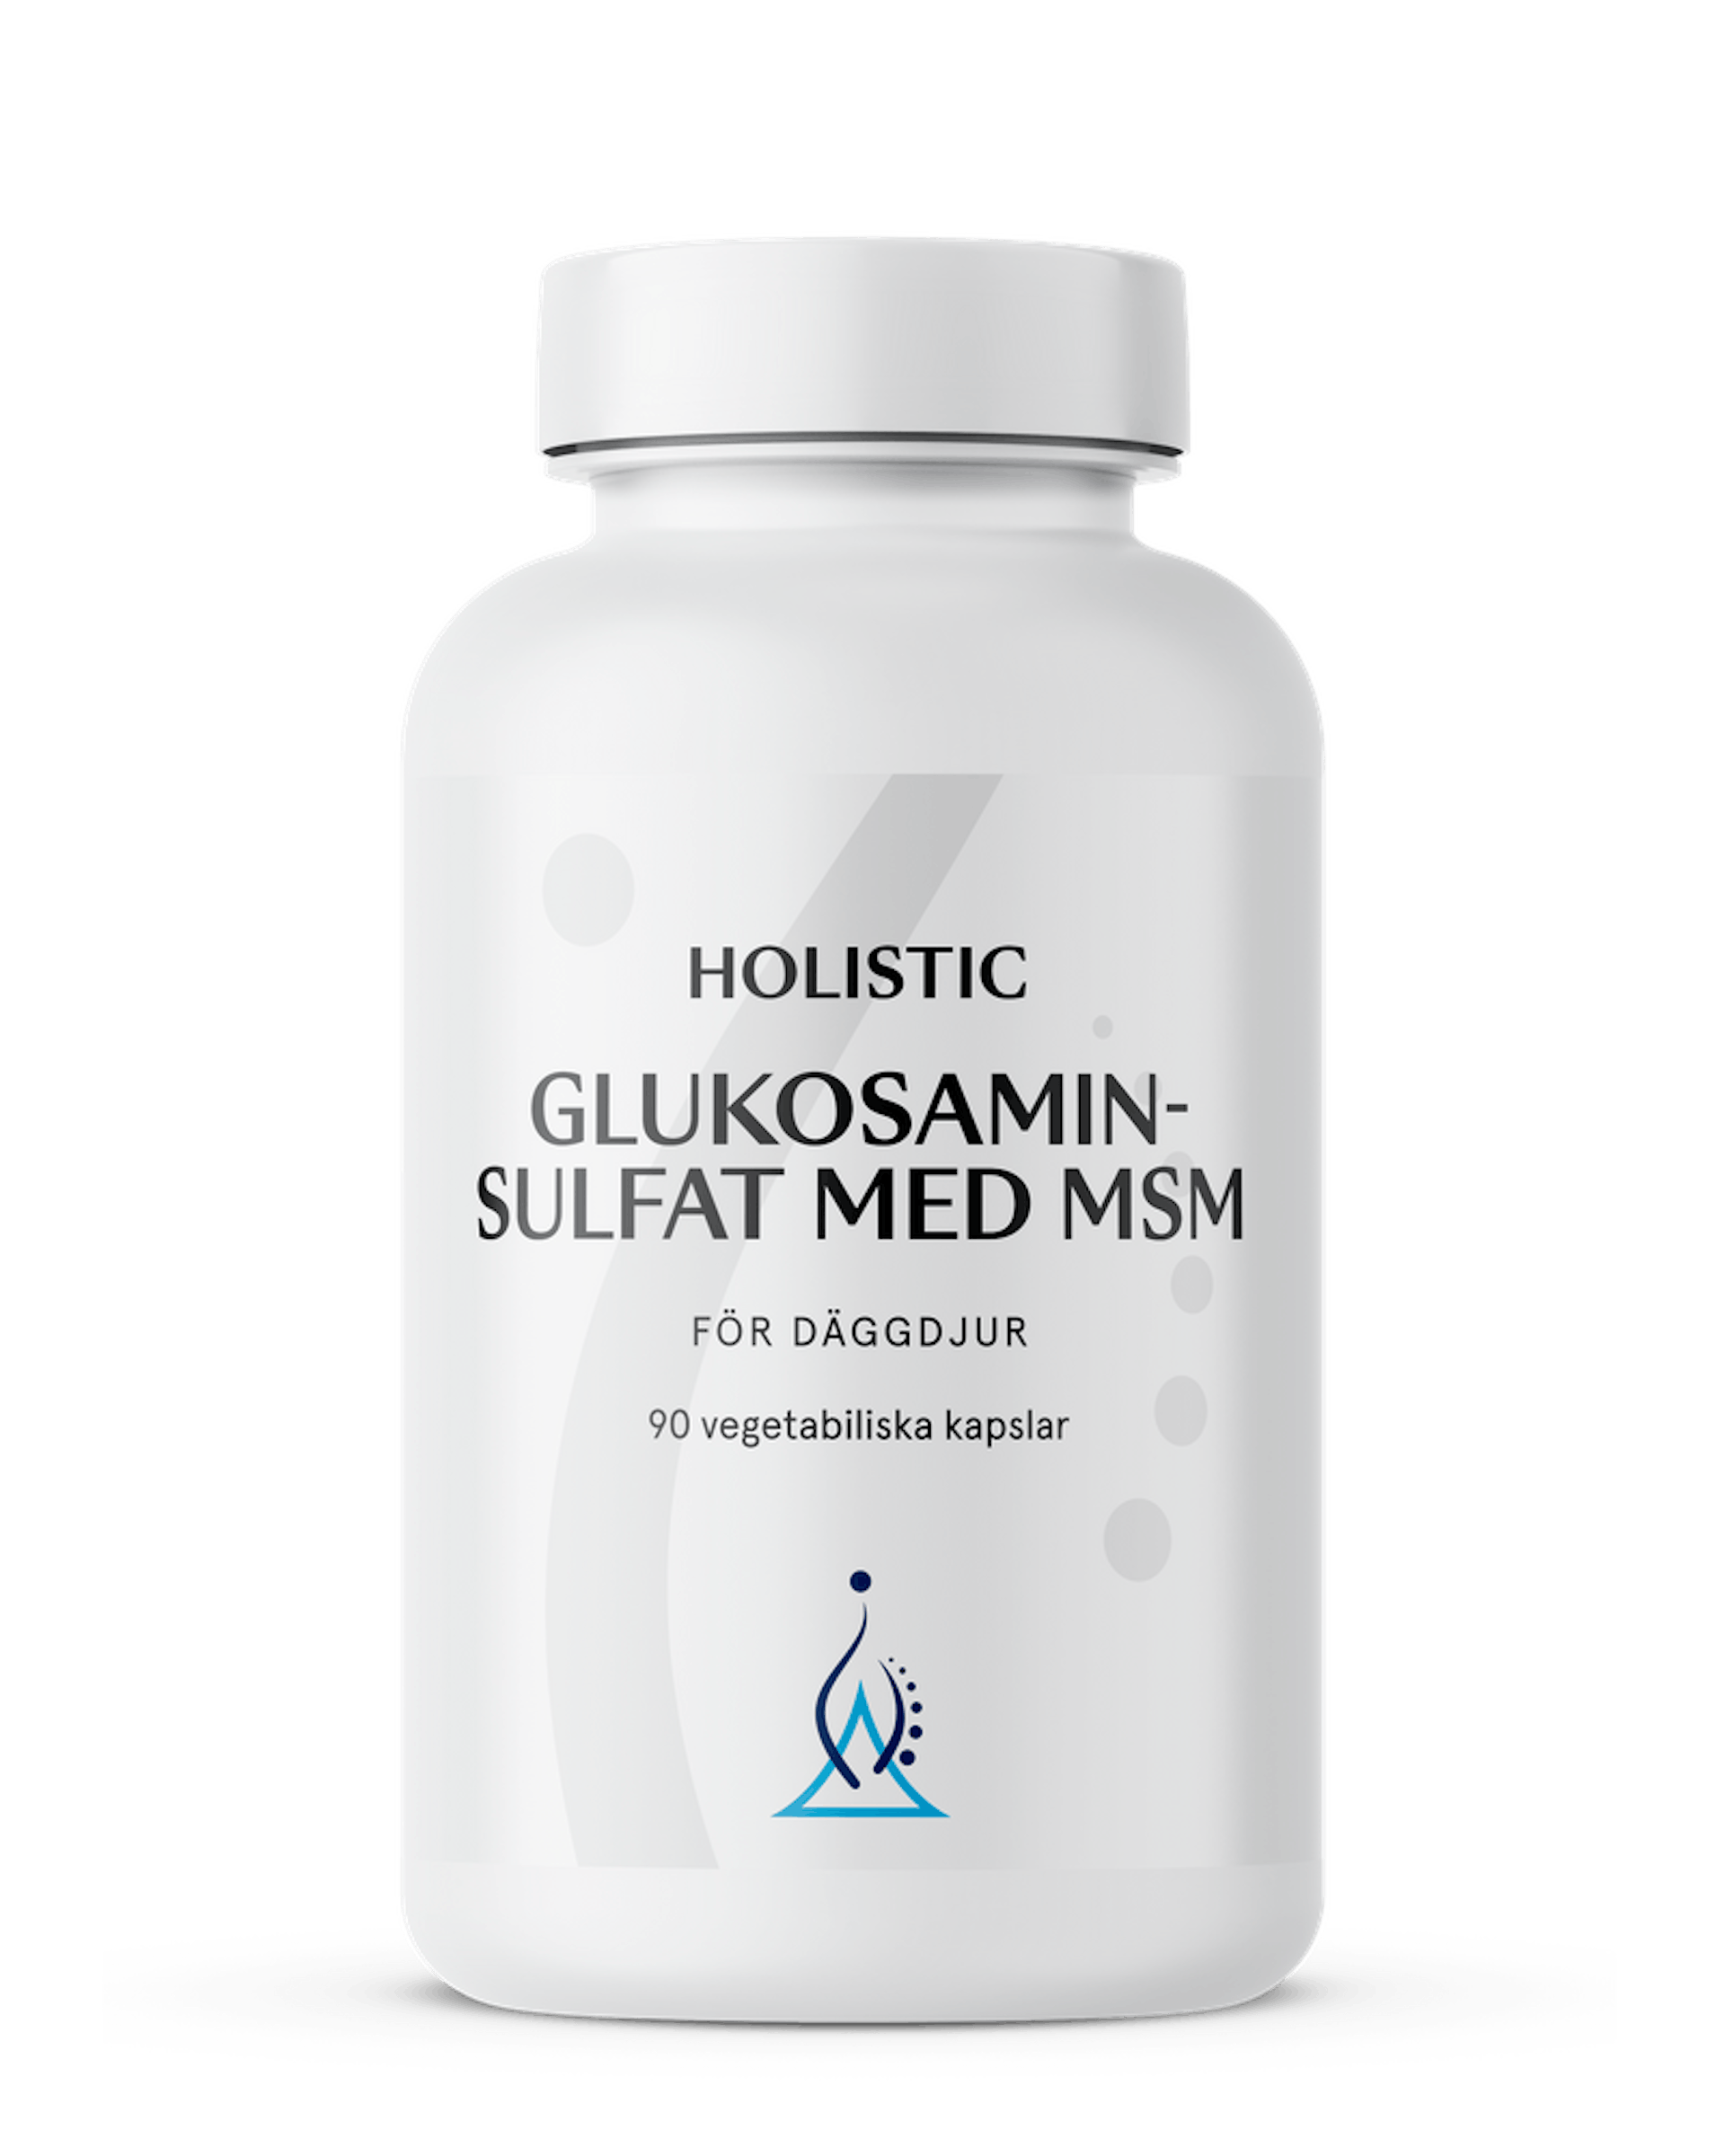 Glukosaminsulfat med MSM, 90 kapslar